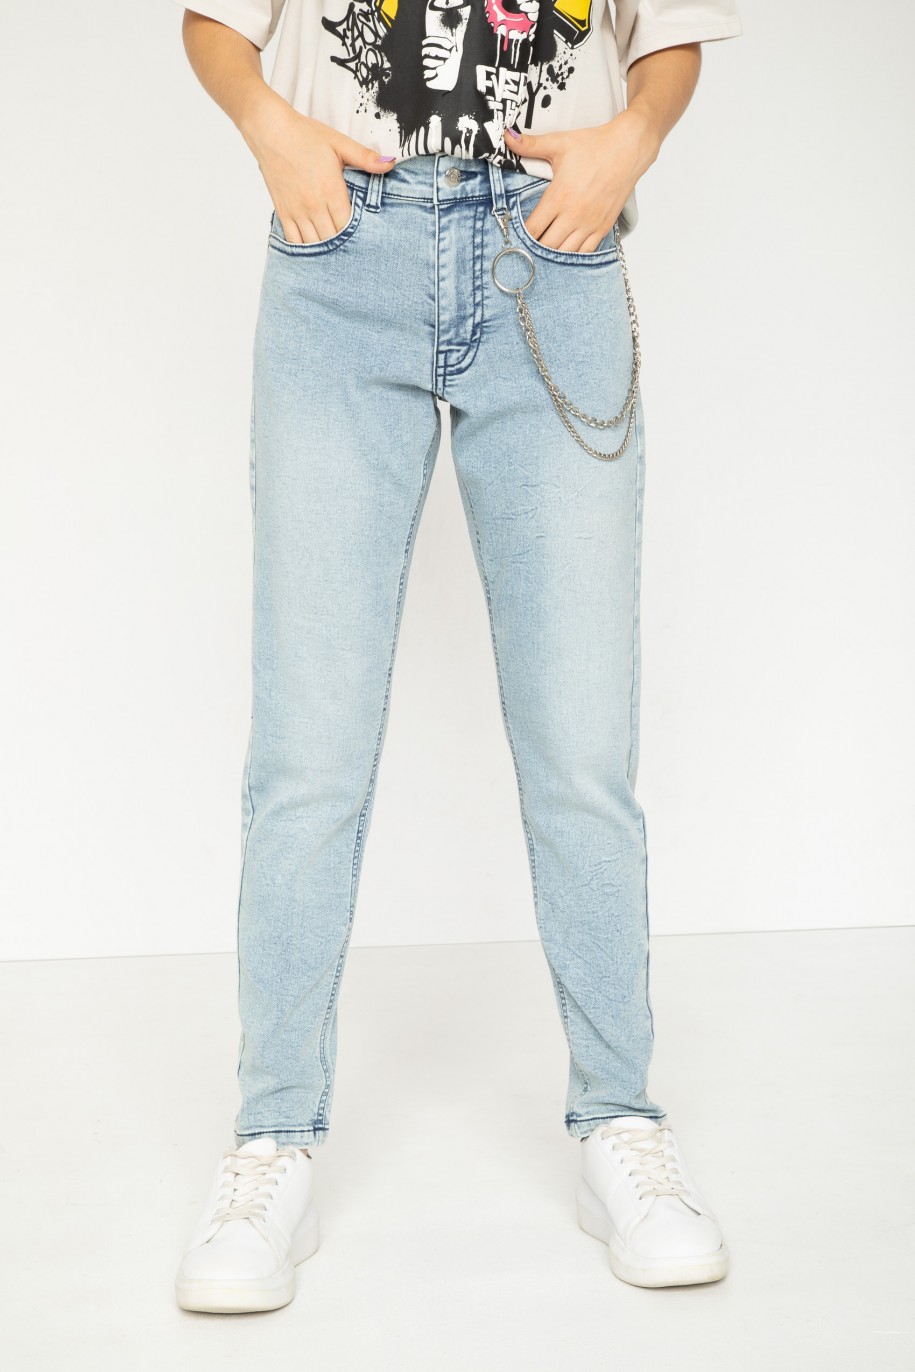 Niebieskie jeansowe spodnie typu BAGGY - 43801